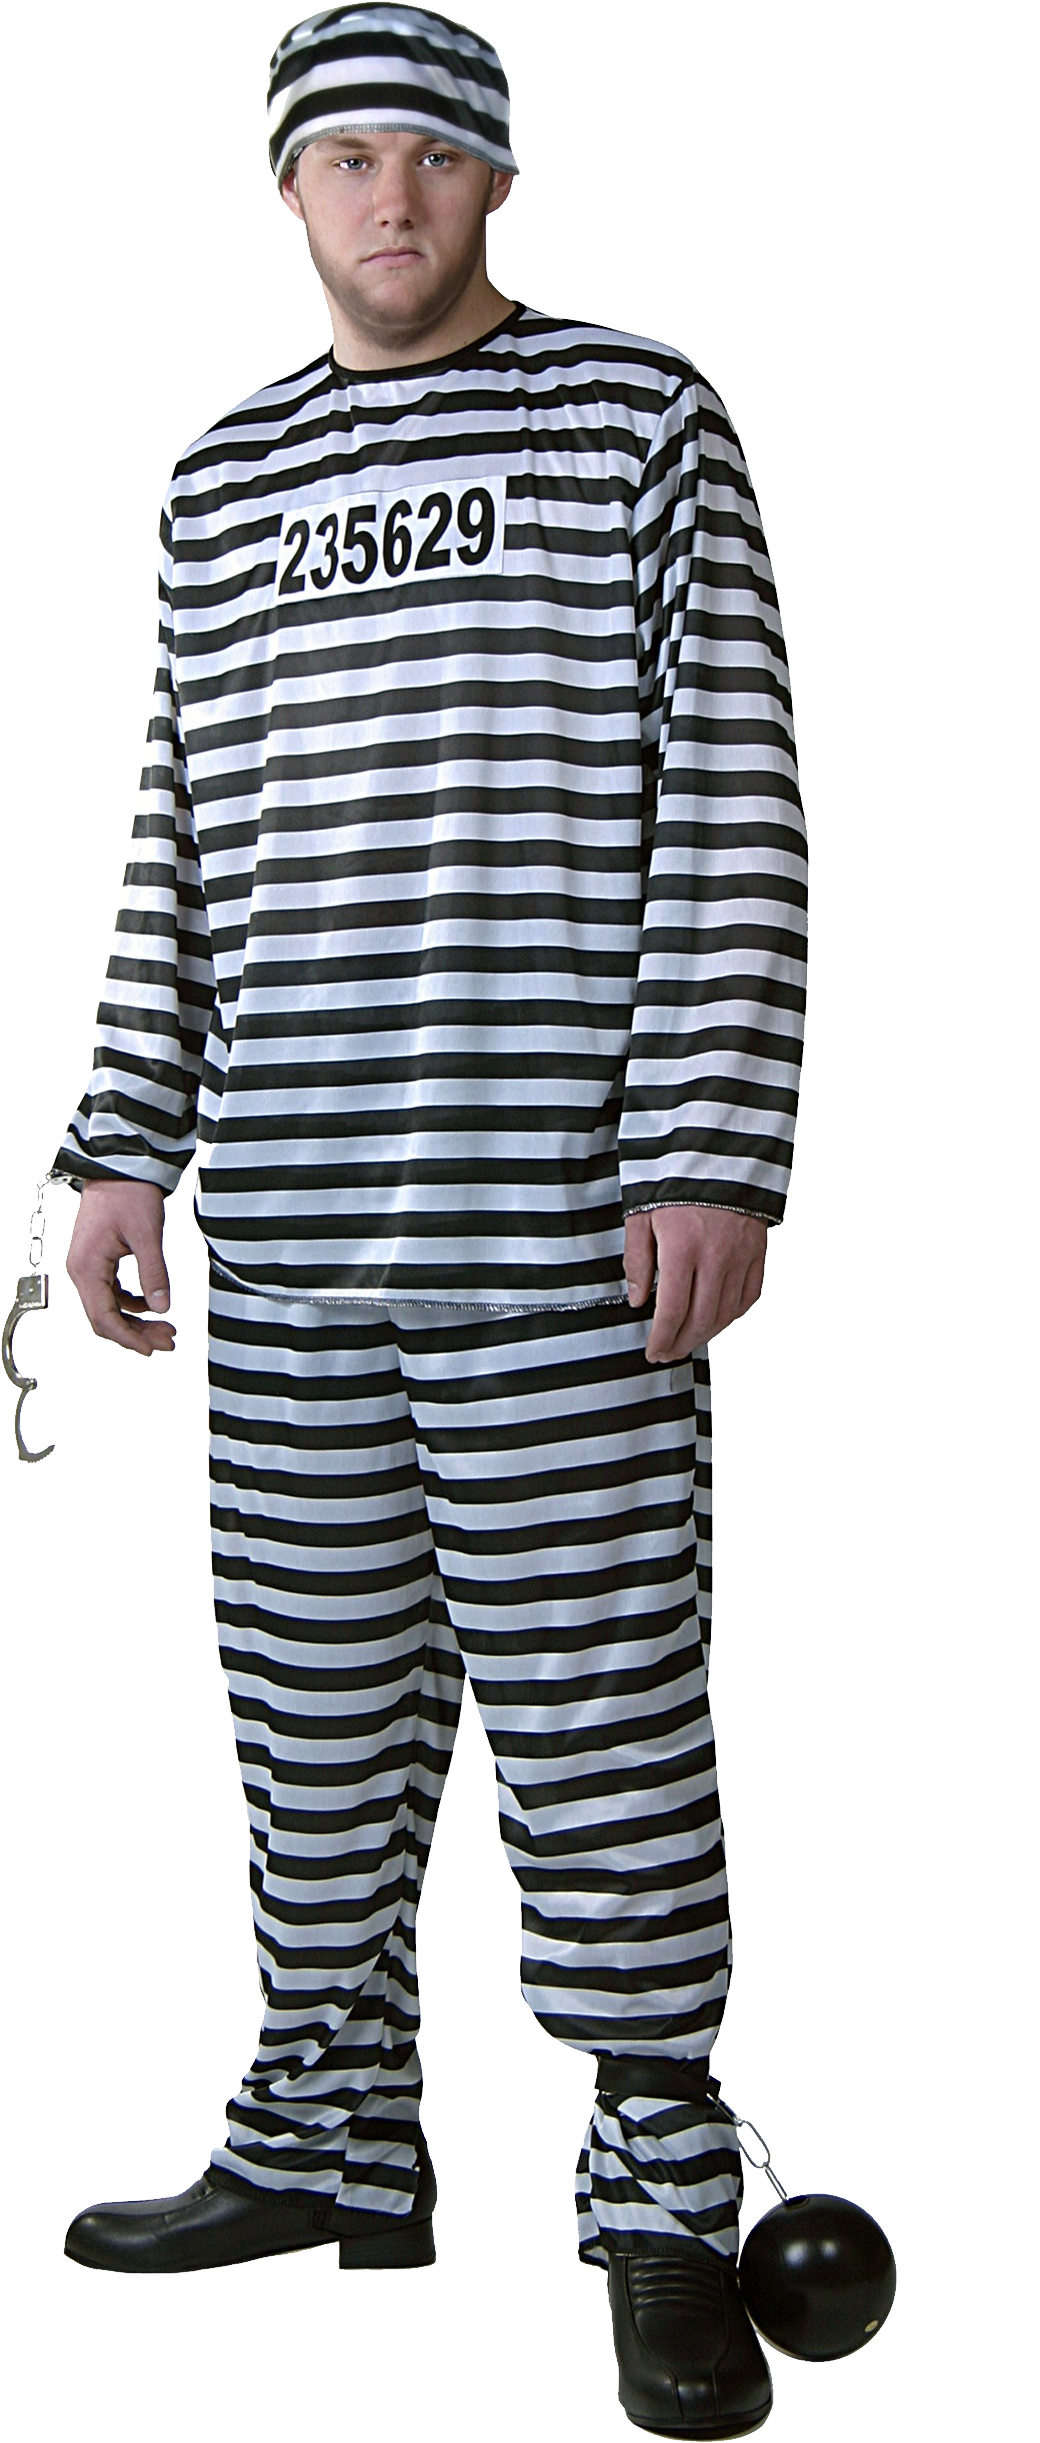 Manin Striped Prison Uniformwith Balland Chain